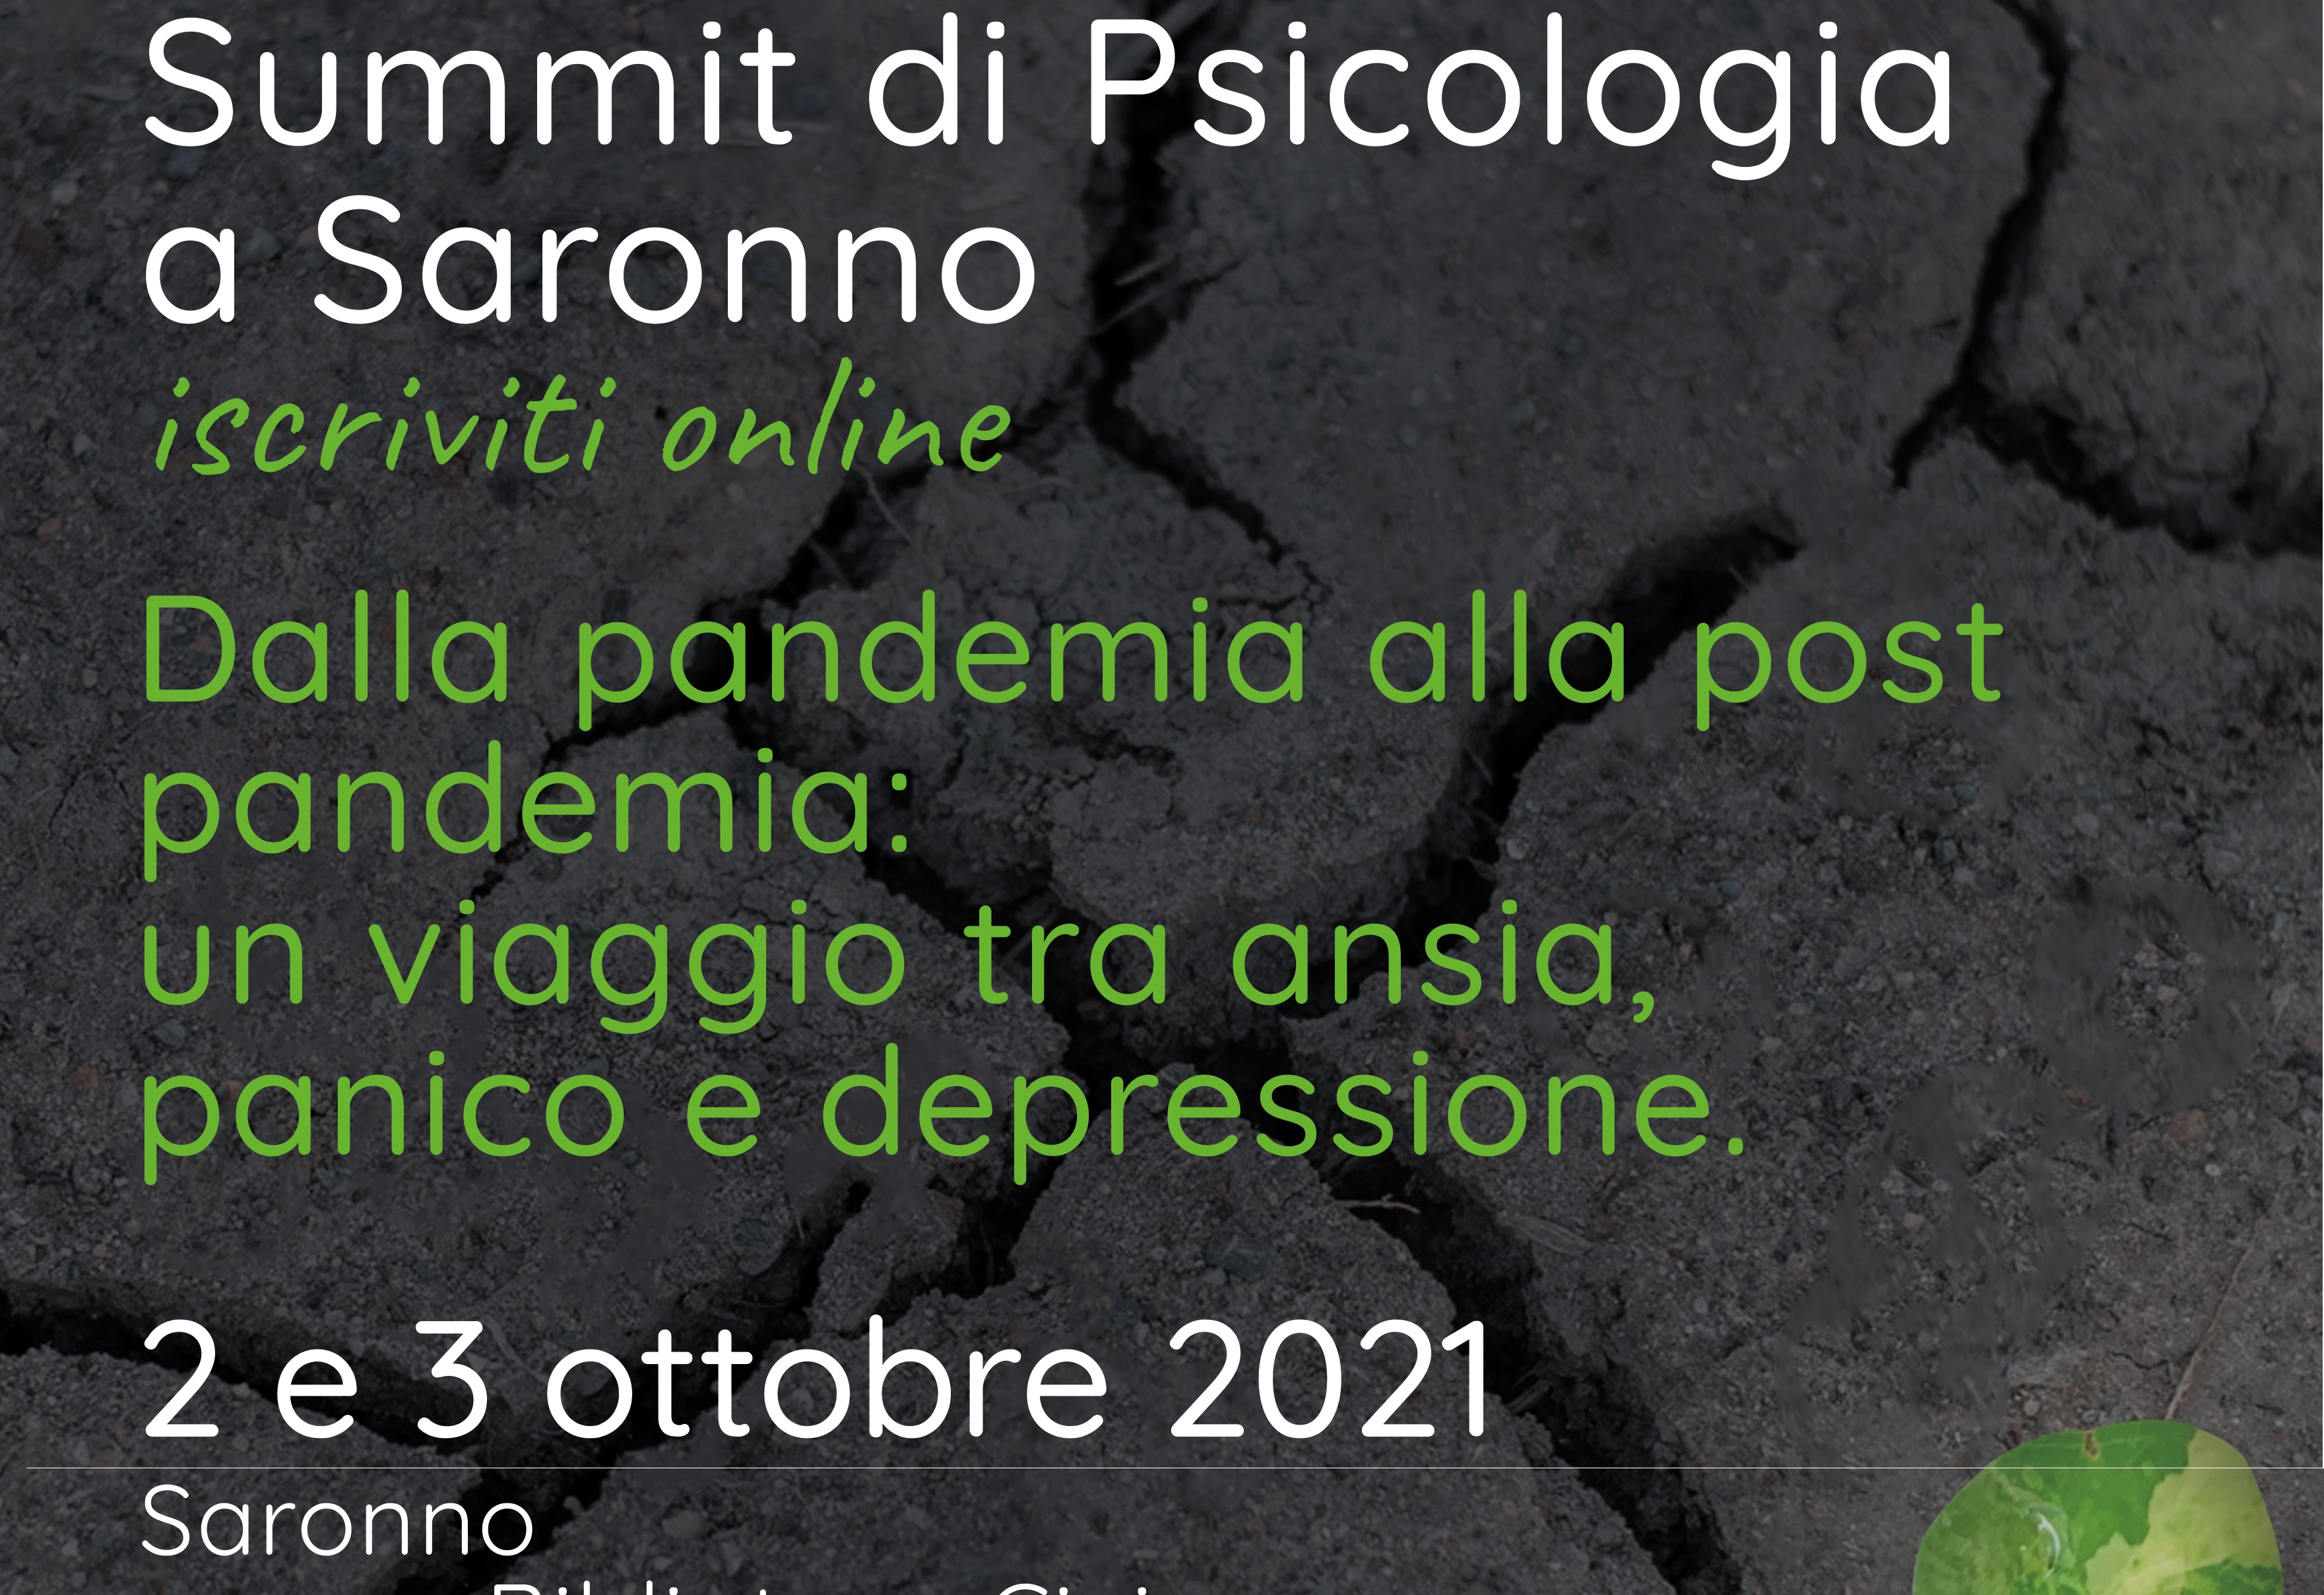 Panico, ansia e depressione post pandemia: i temi del Summit di Psicologia di Saronno